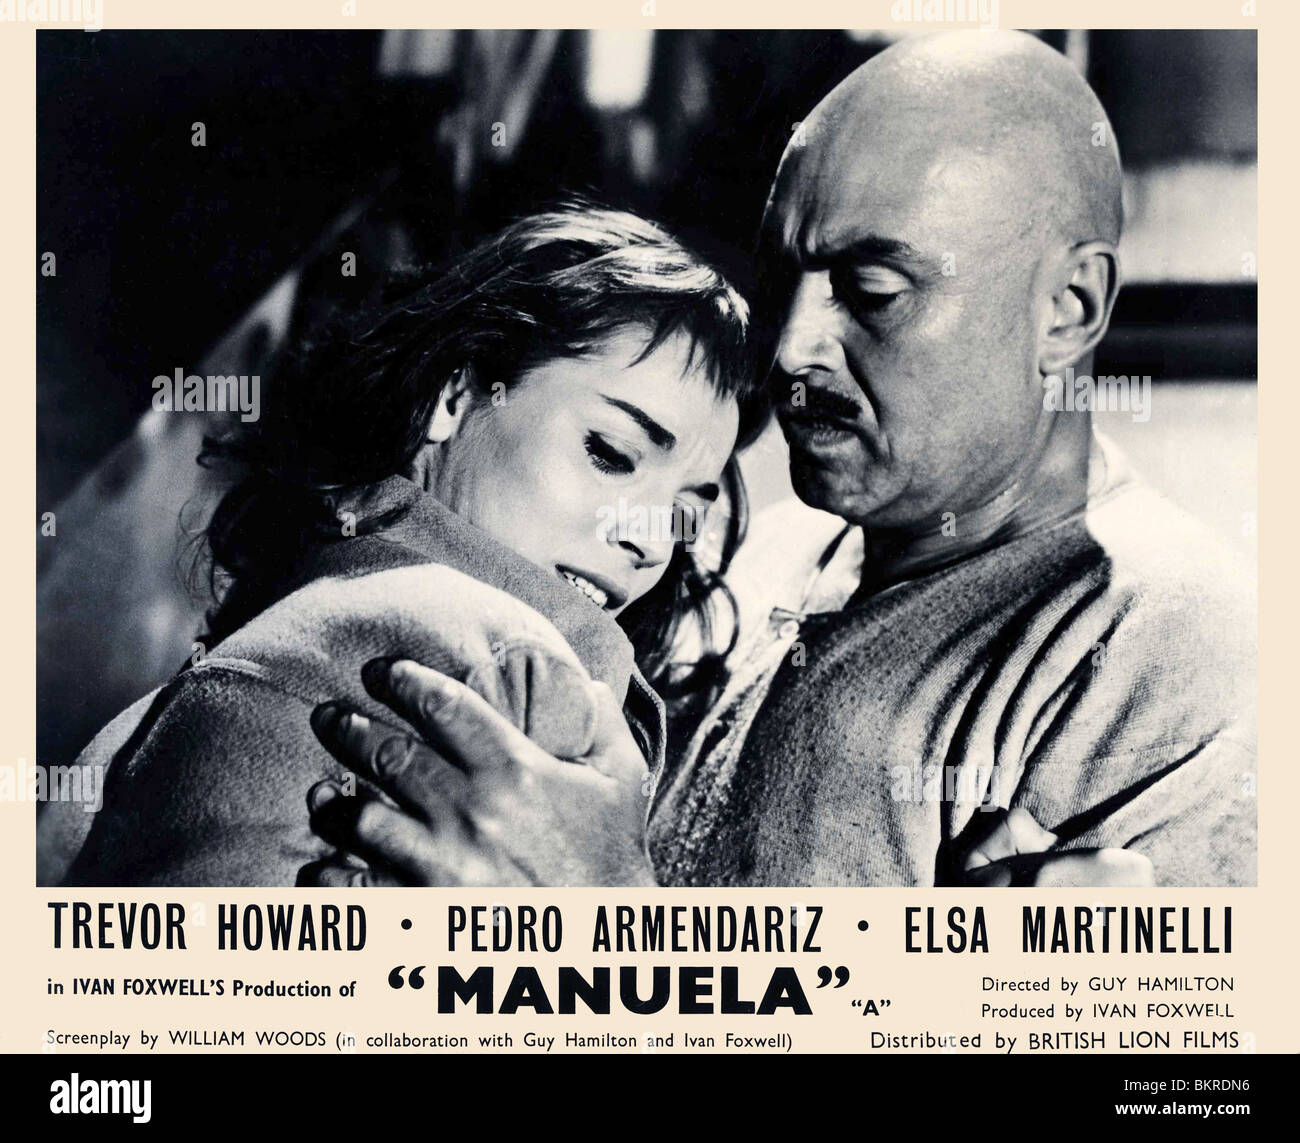 MANUELA (1957) GUY HAMILTON (DIR) MANU 004P FOH Stock Photo